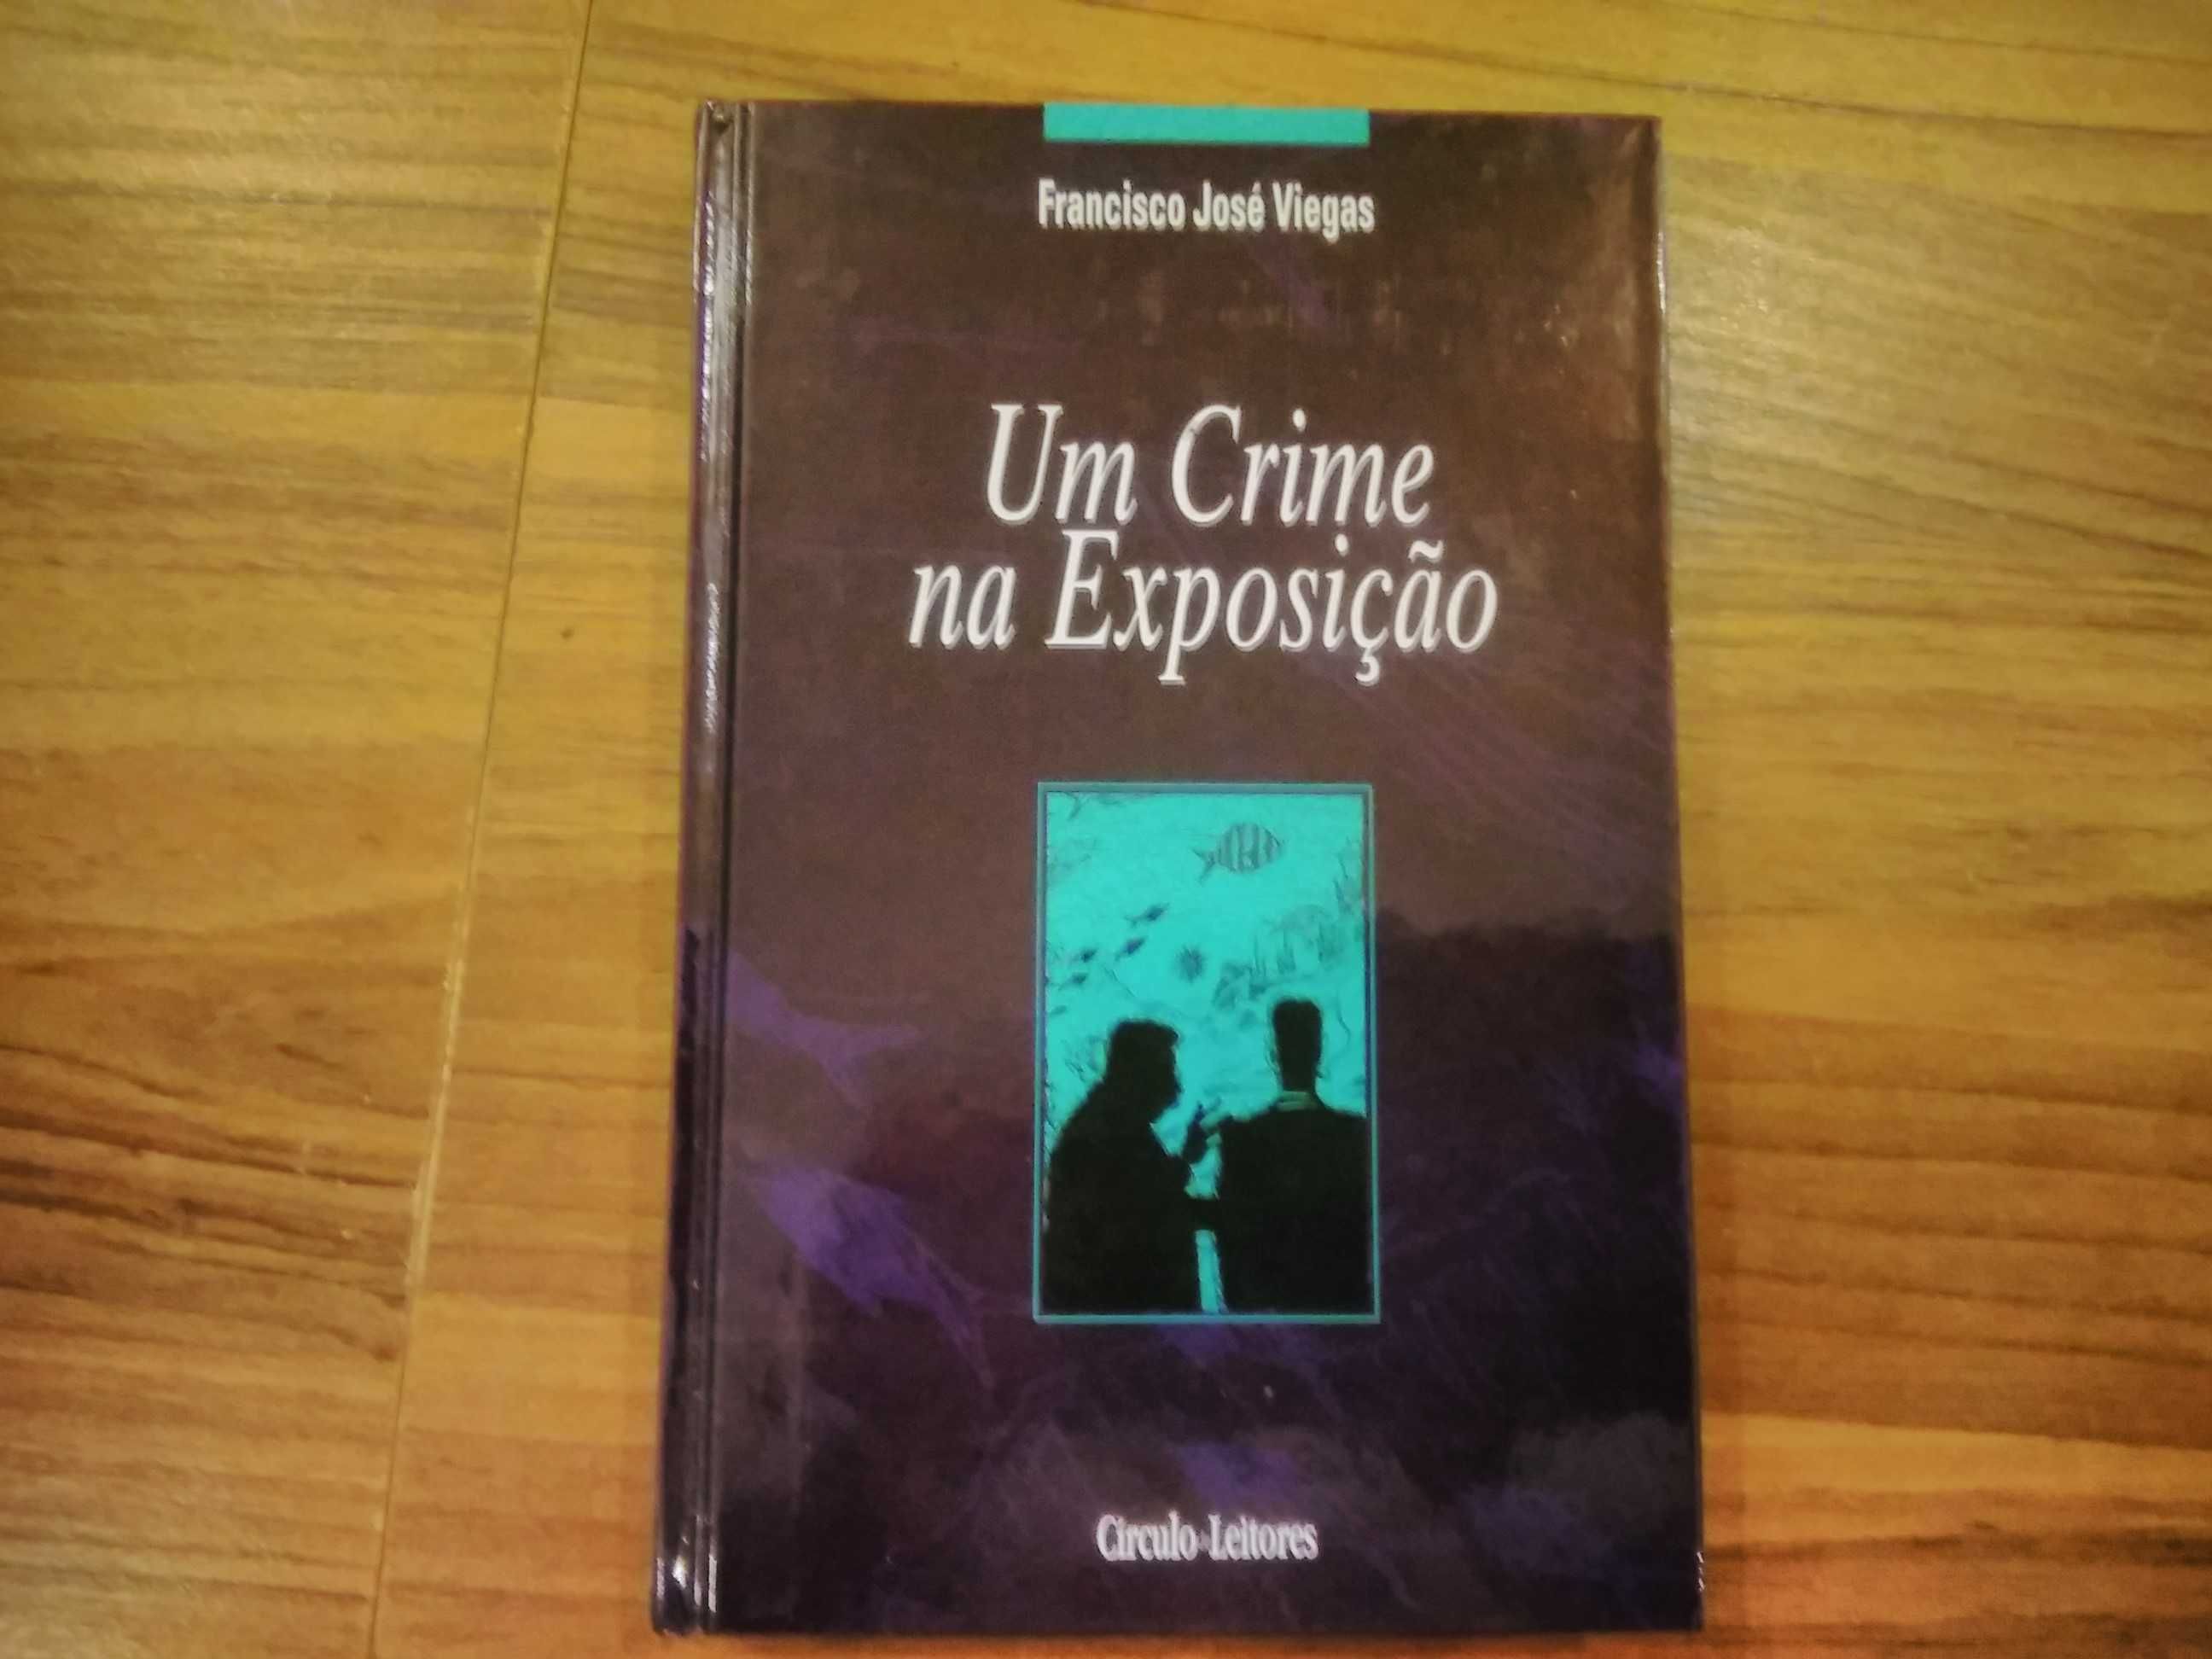 Um Crime na Exposição, de Francisco José Viegas, portes incluídos